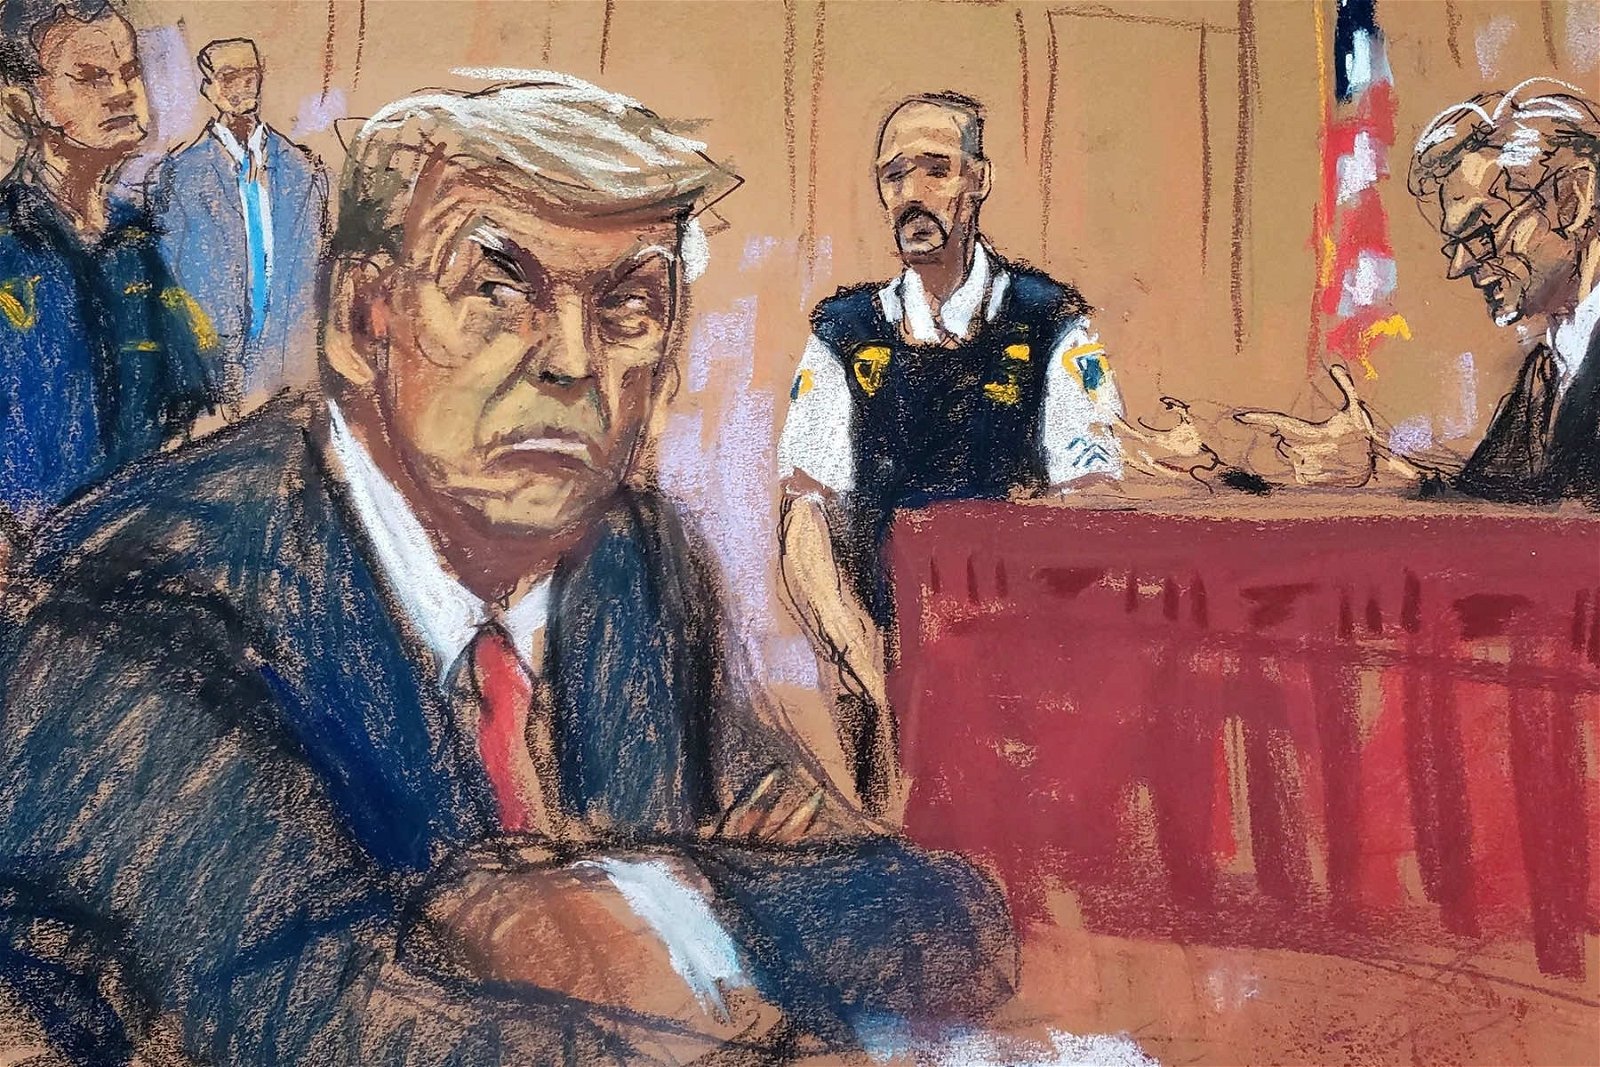 罗森伯格（Jane Rosenberg）描绘的“特朗普怒视检察官”的素描在网络疯传，《纽约客》更将该素描放在杂志封面。